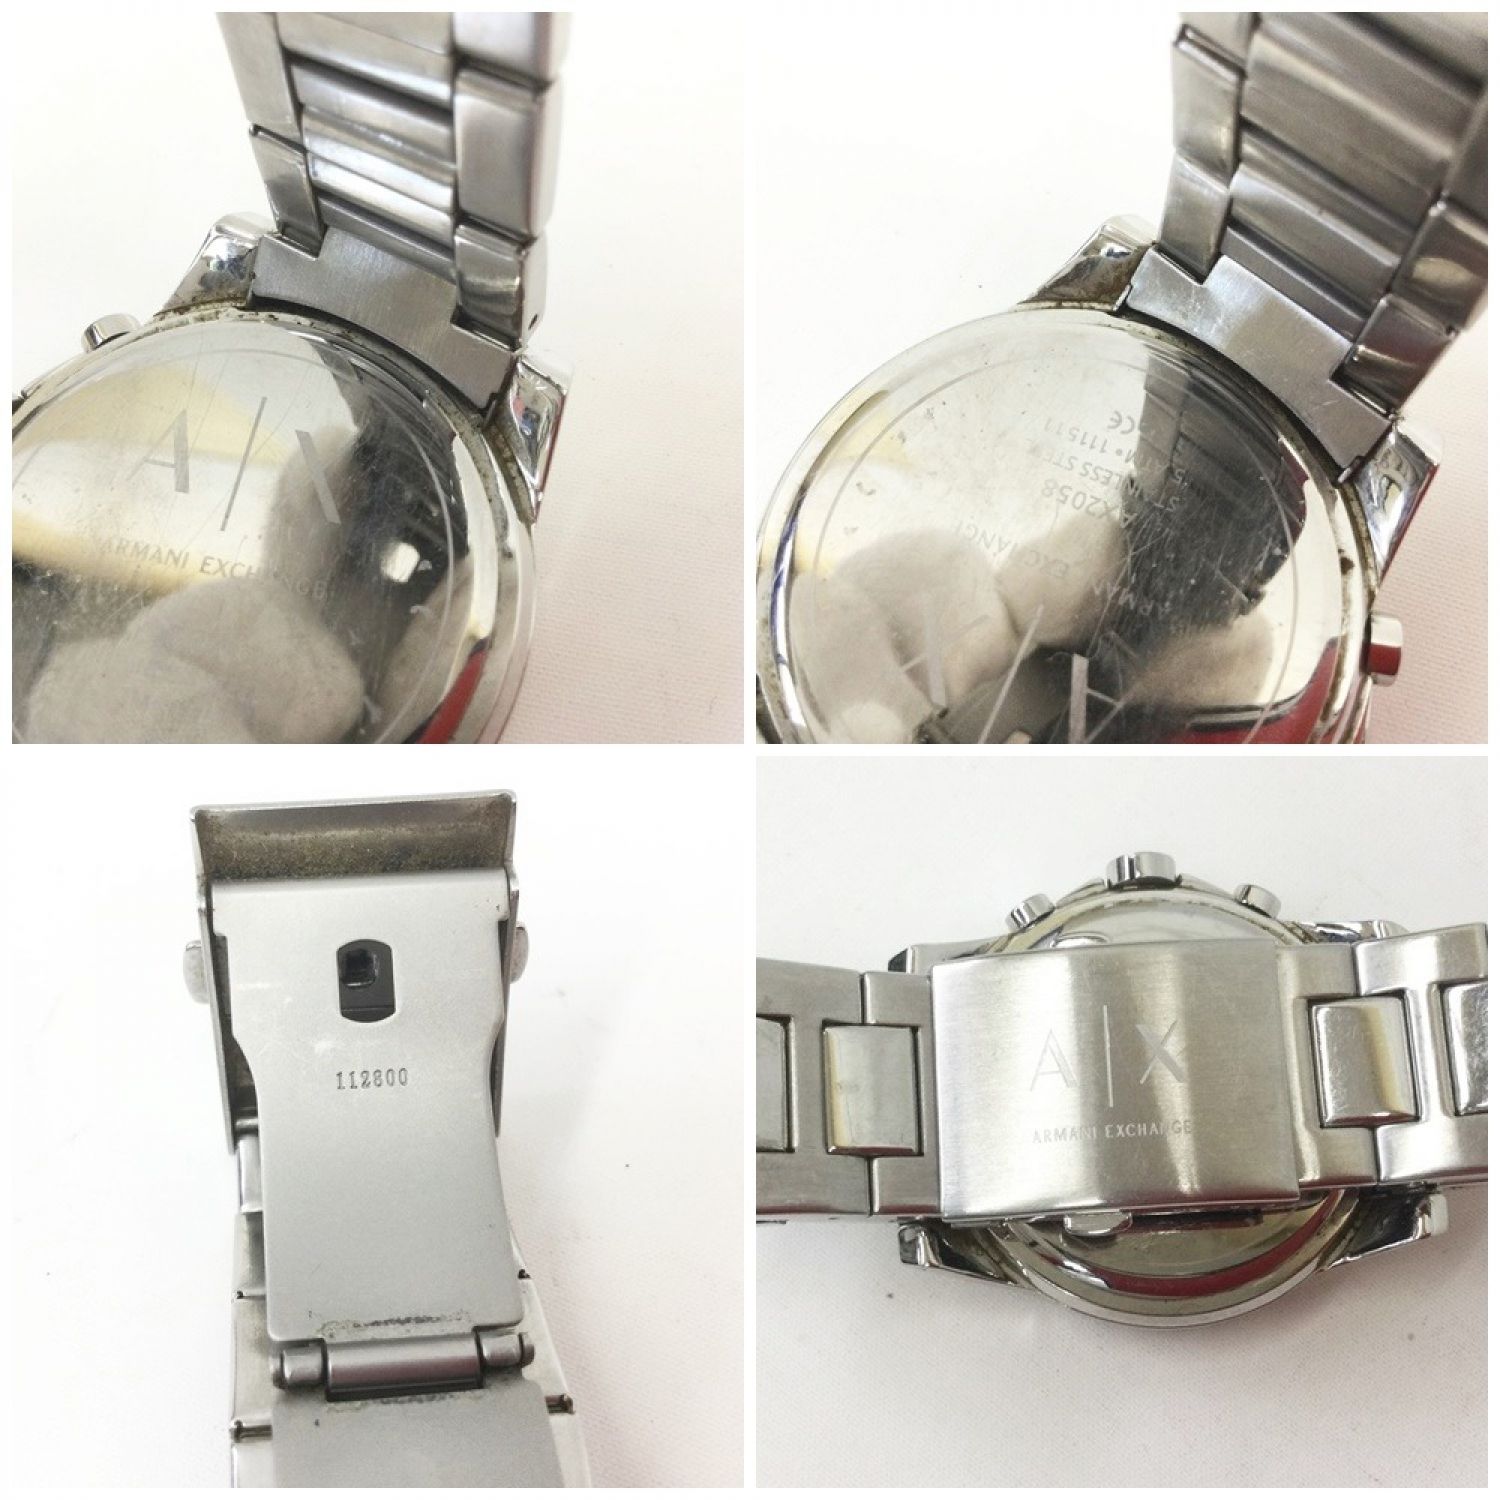 中古】 ARMANI EXCHANGE アルマーニ・エクスチェンジ 腕時計 AX2058